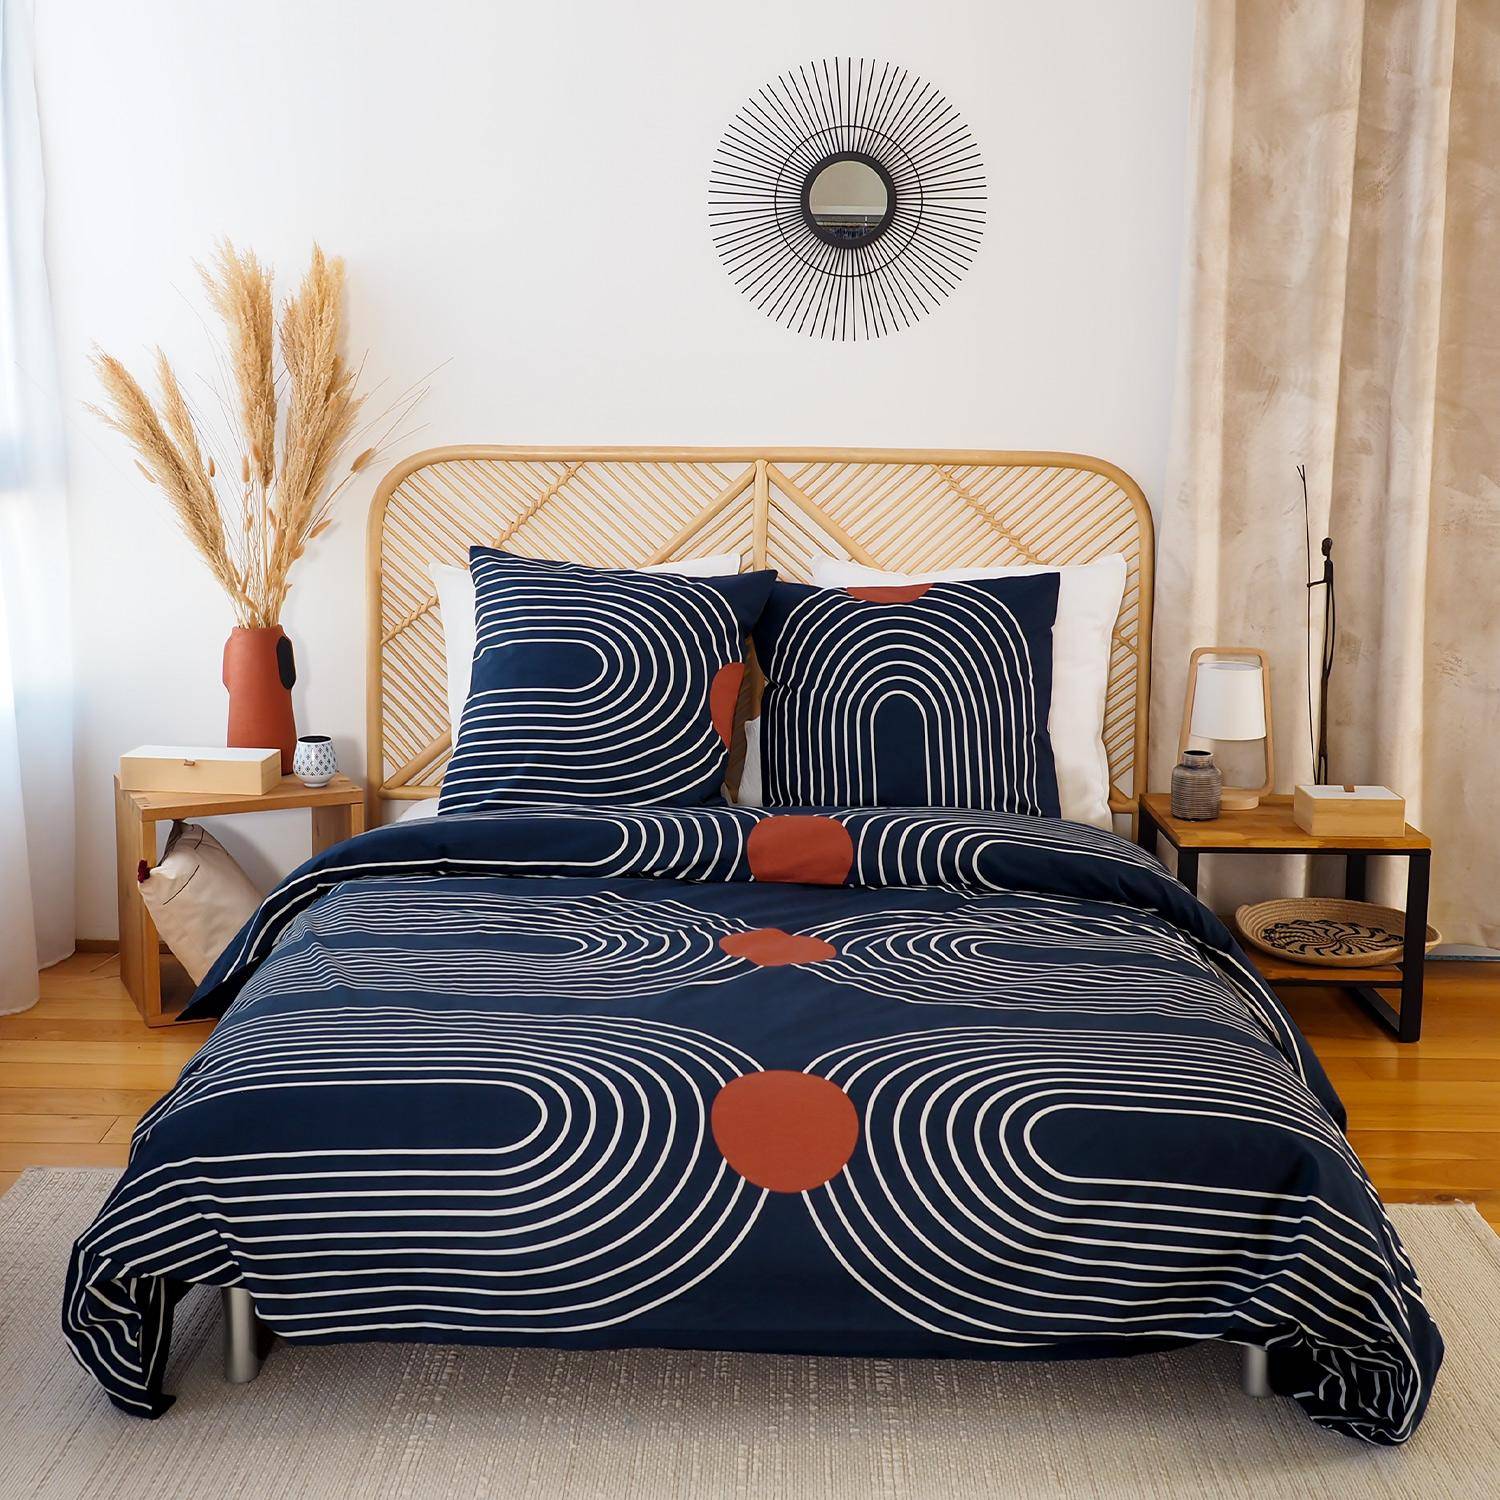 Bettwäsche 240x220 cm bedruckt mit Kurvenmotiv, aus weicher Baumwolle, 1 Bettbezug + 2 Kissenbezüge Photo1